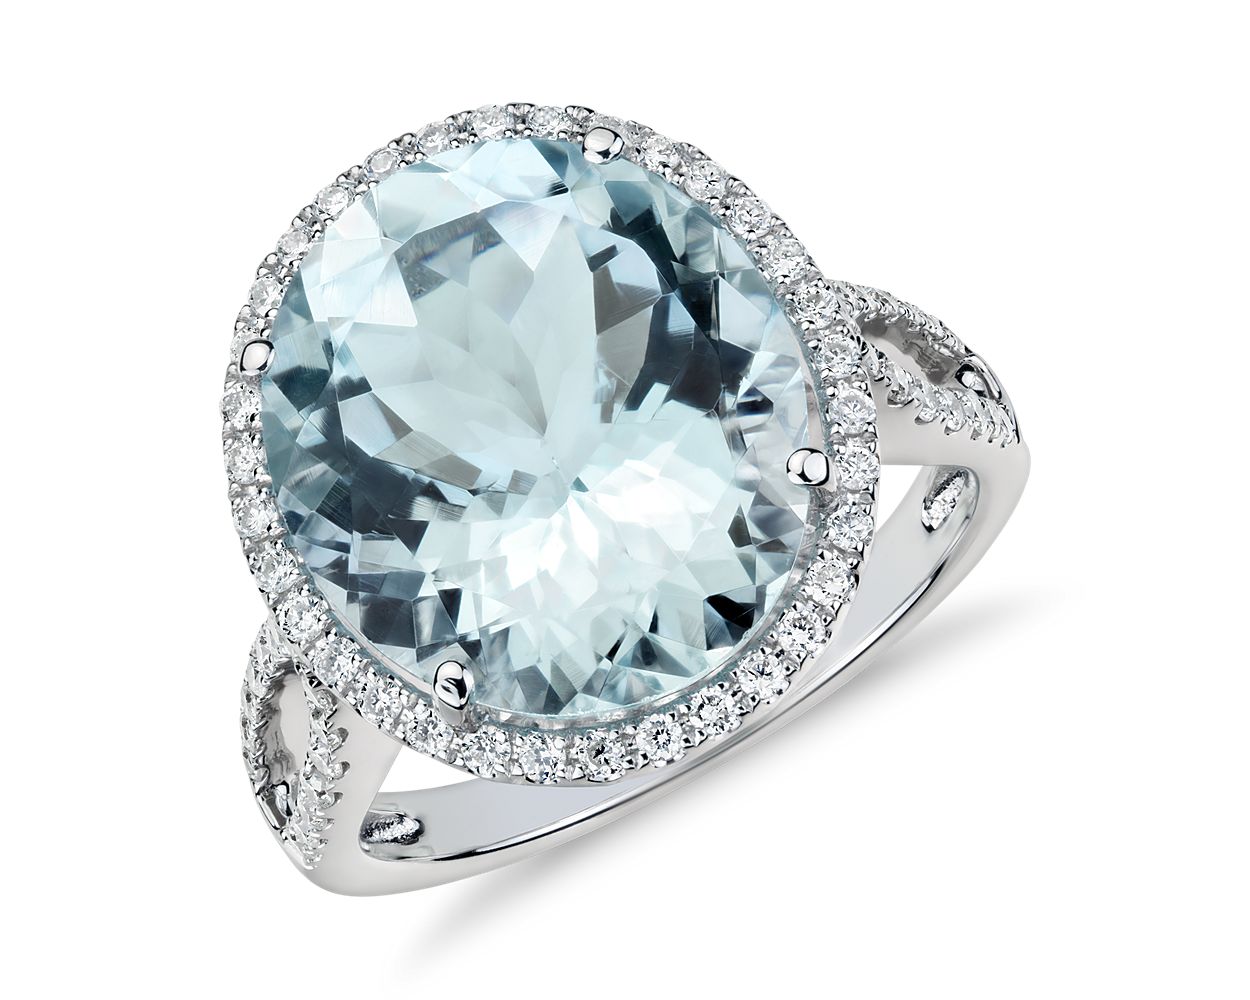 Anzor Jewelry - 14k White Gold Aquamarine Diamond Anniversary Ring